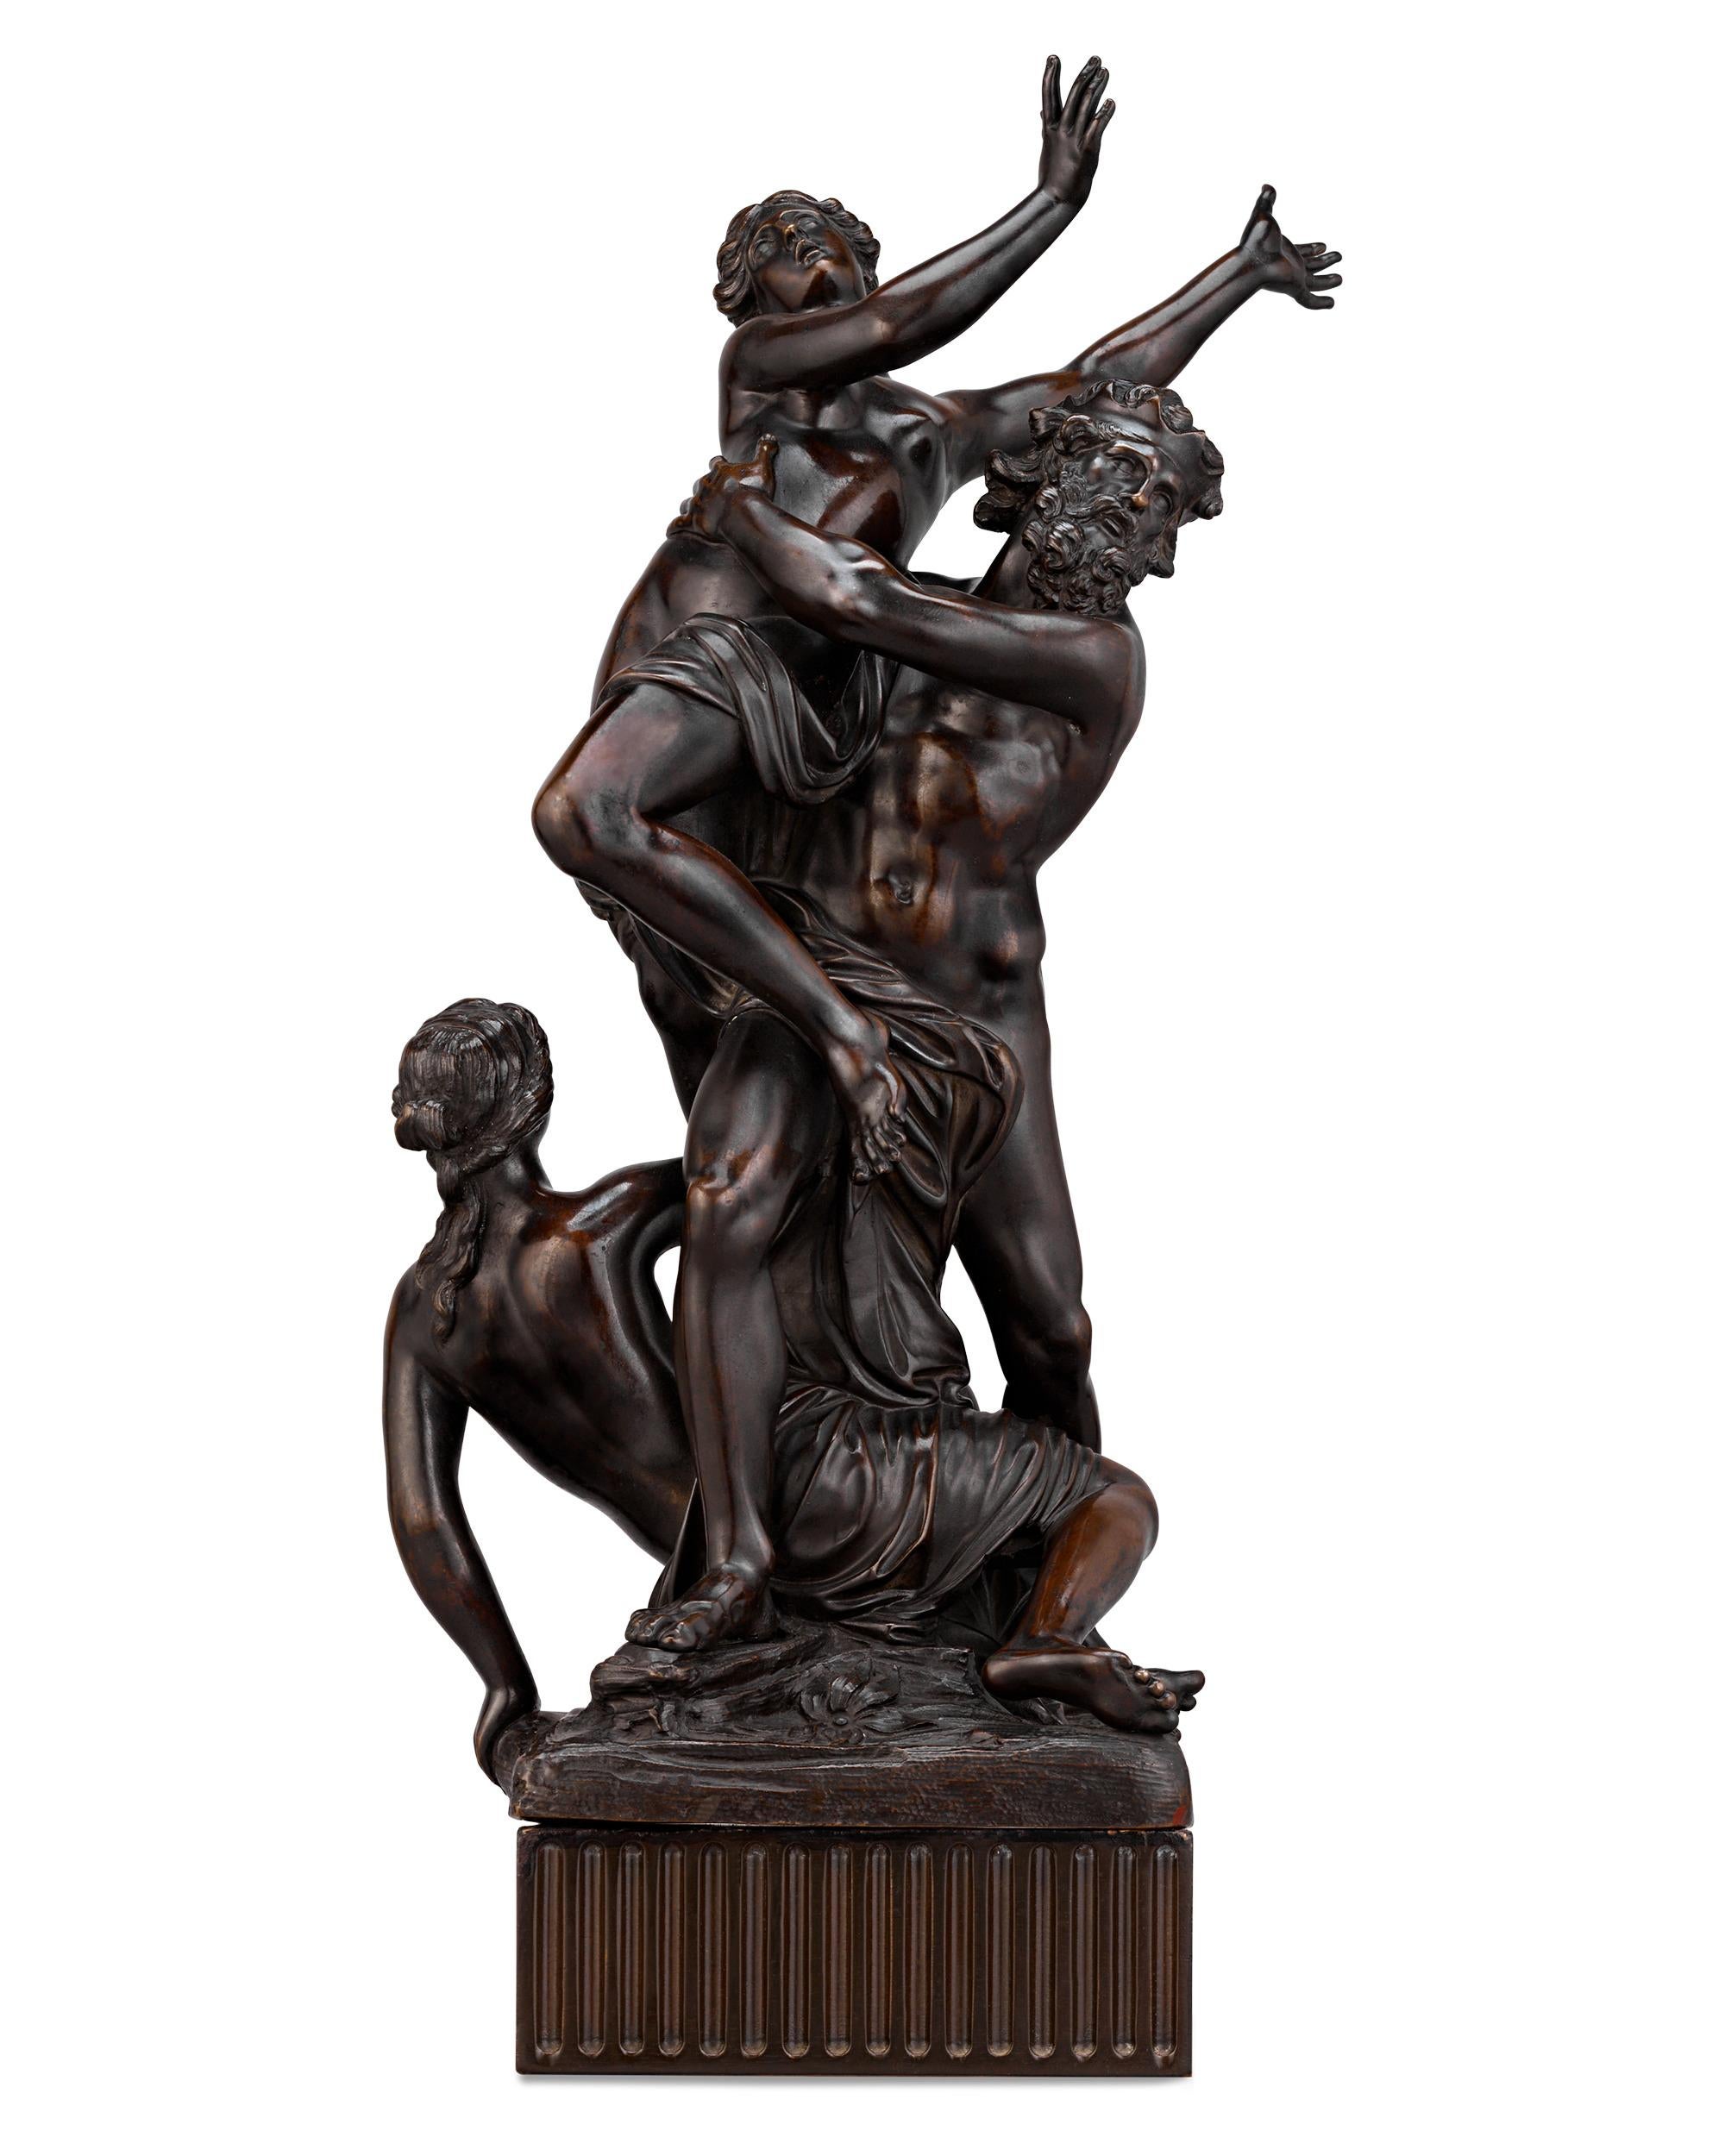 Nach François Girardon
1628-1715  Französisch

Pluto entführt Proserpine

Bronze

Diese hochbarocke Komposition greift die berühmte Erzählung von Pluto und Proserpine aus der römischen Mythologie auf. Die patinierte Bronze aus dem späten 17.